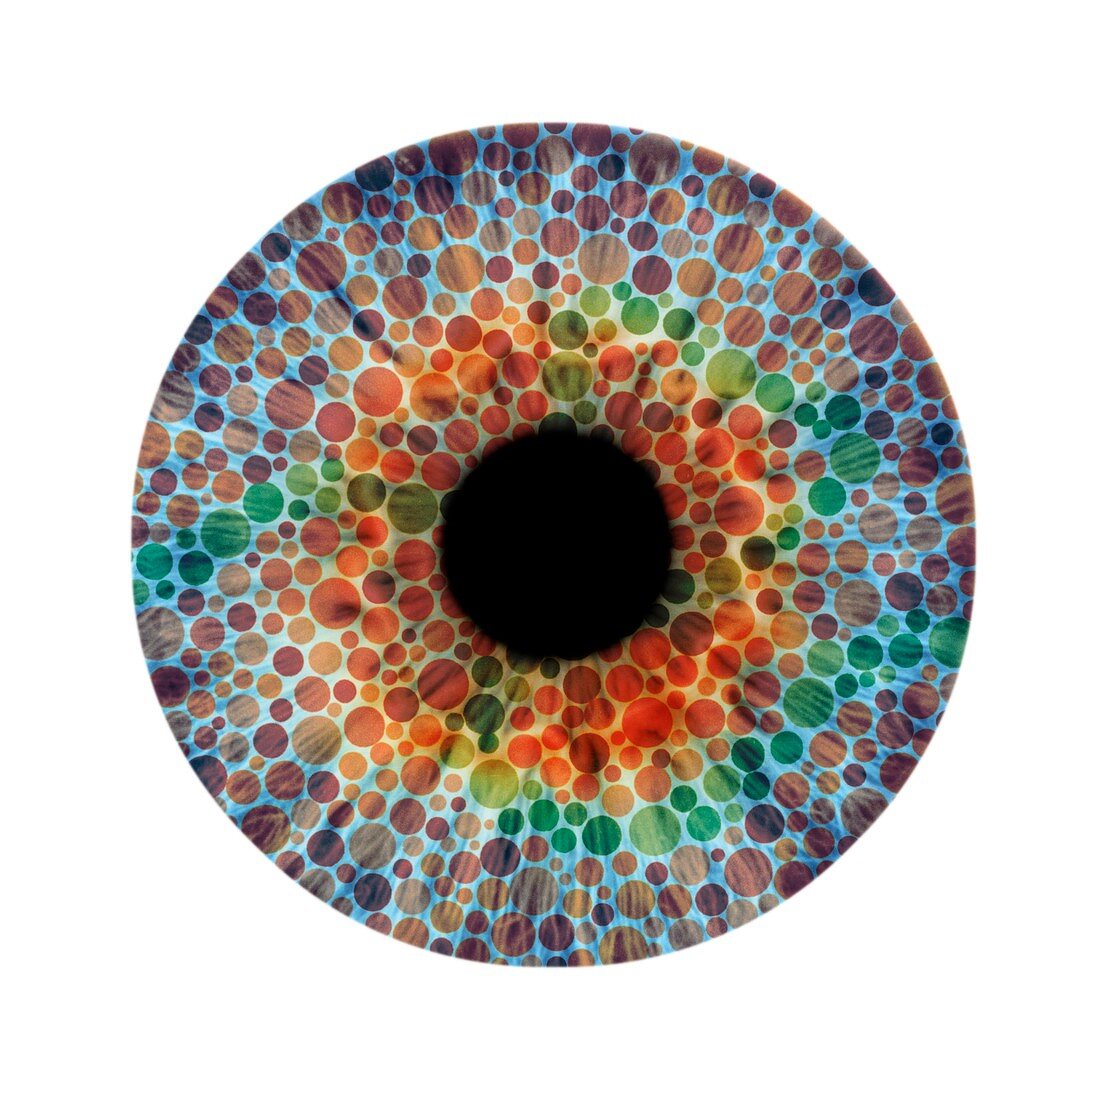 Colour blindness,conceptual image